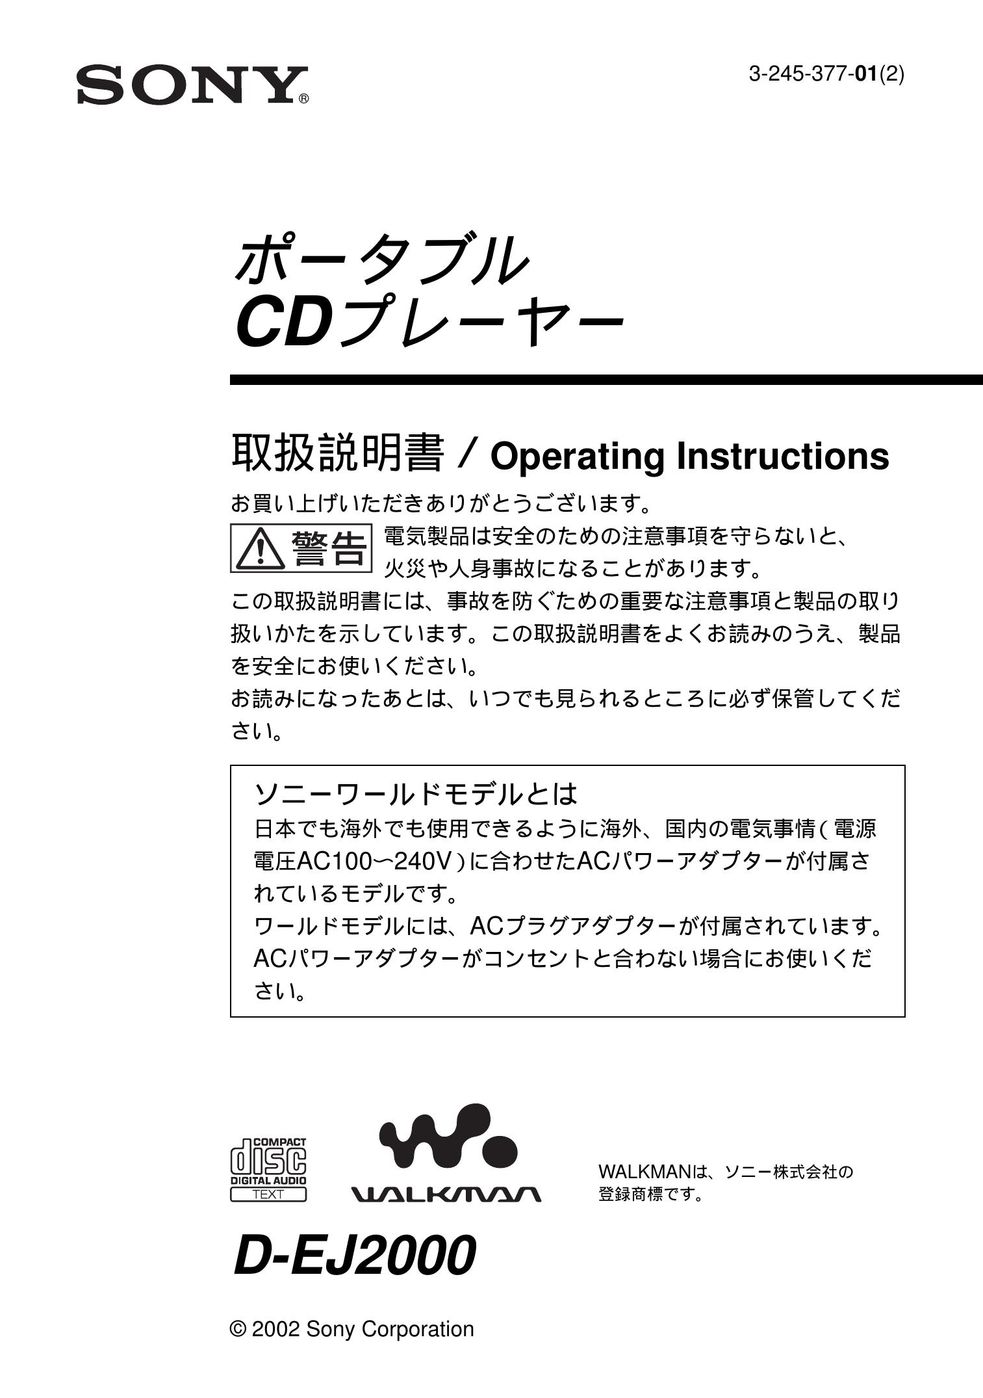 Sony D-EJ2000 Coffeemaker User Manual